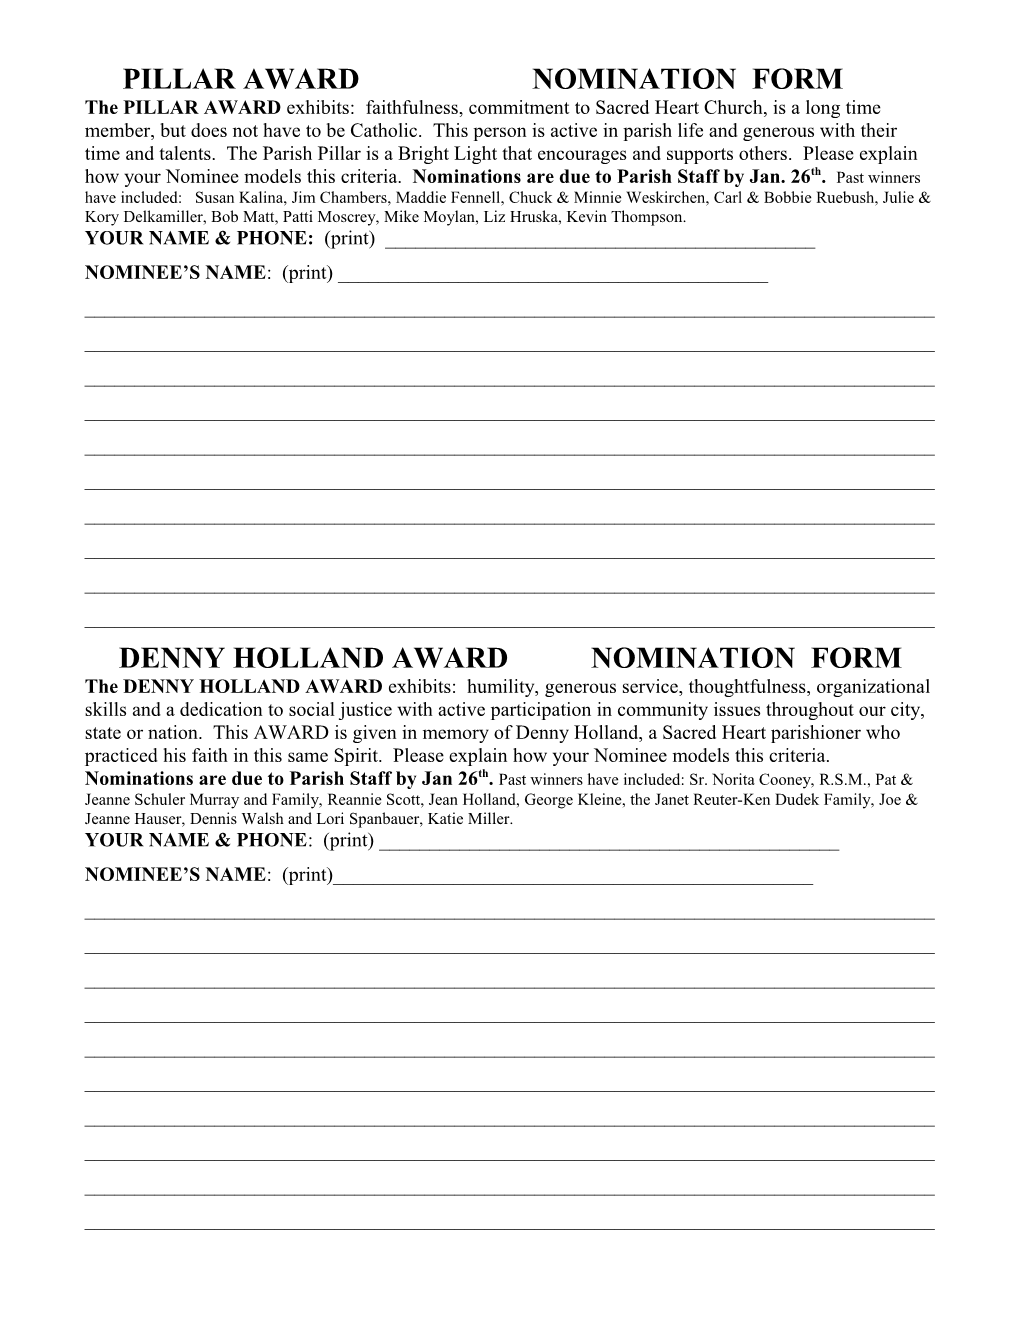 Pillar Award Nomination Form